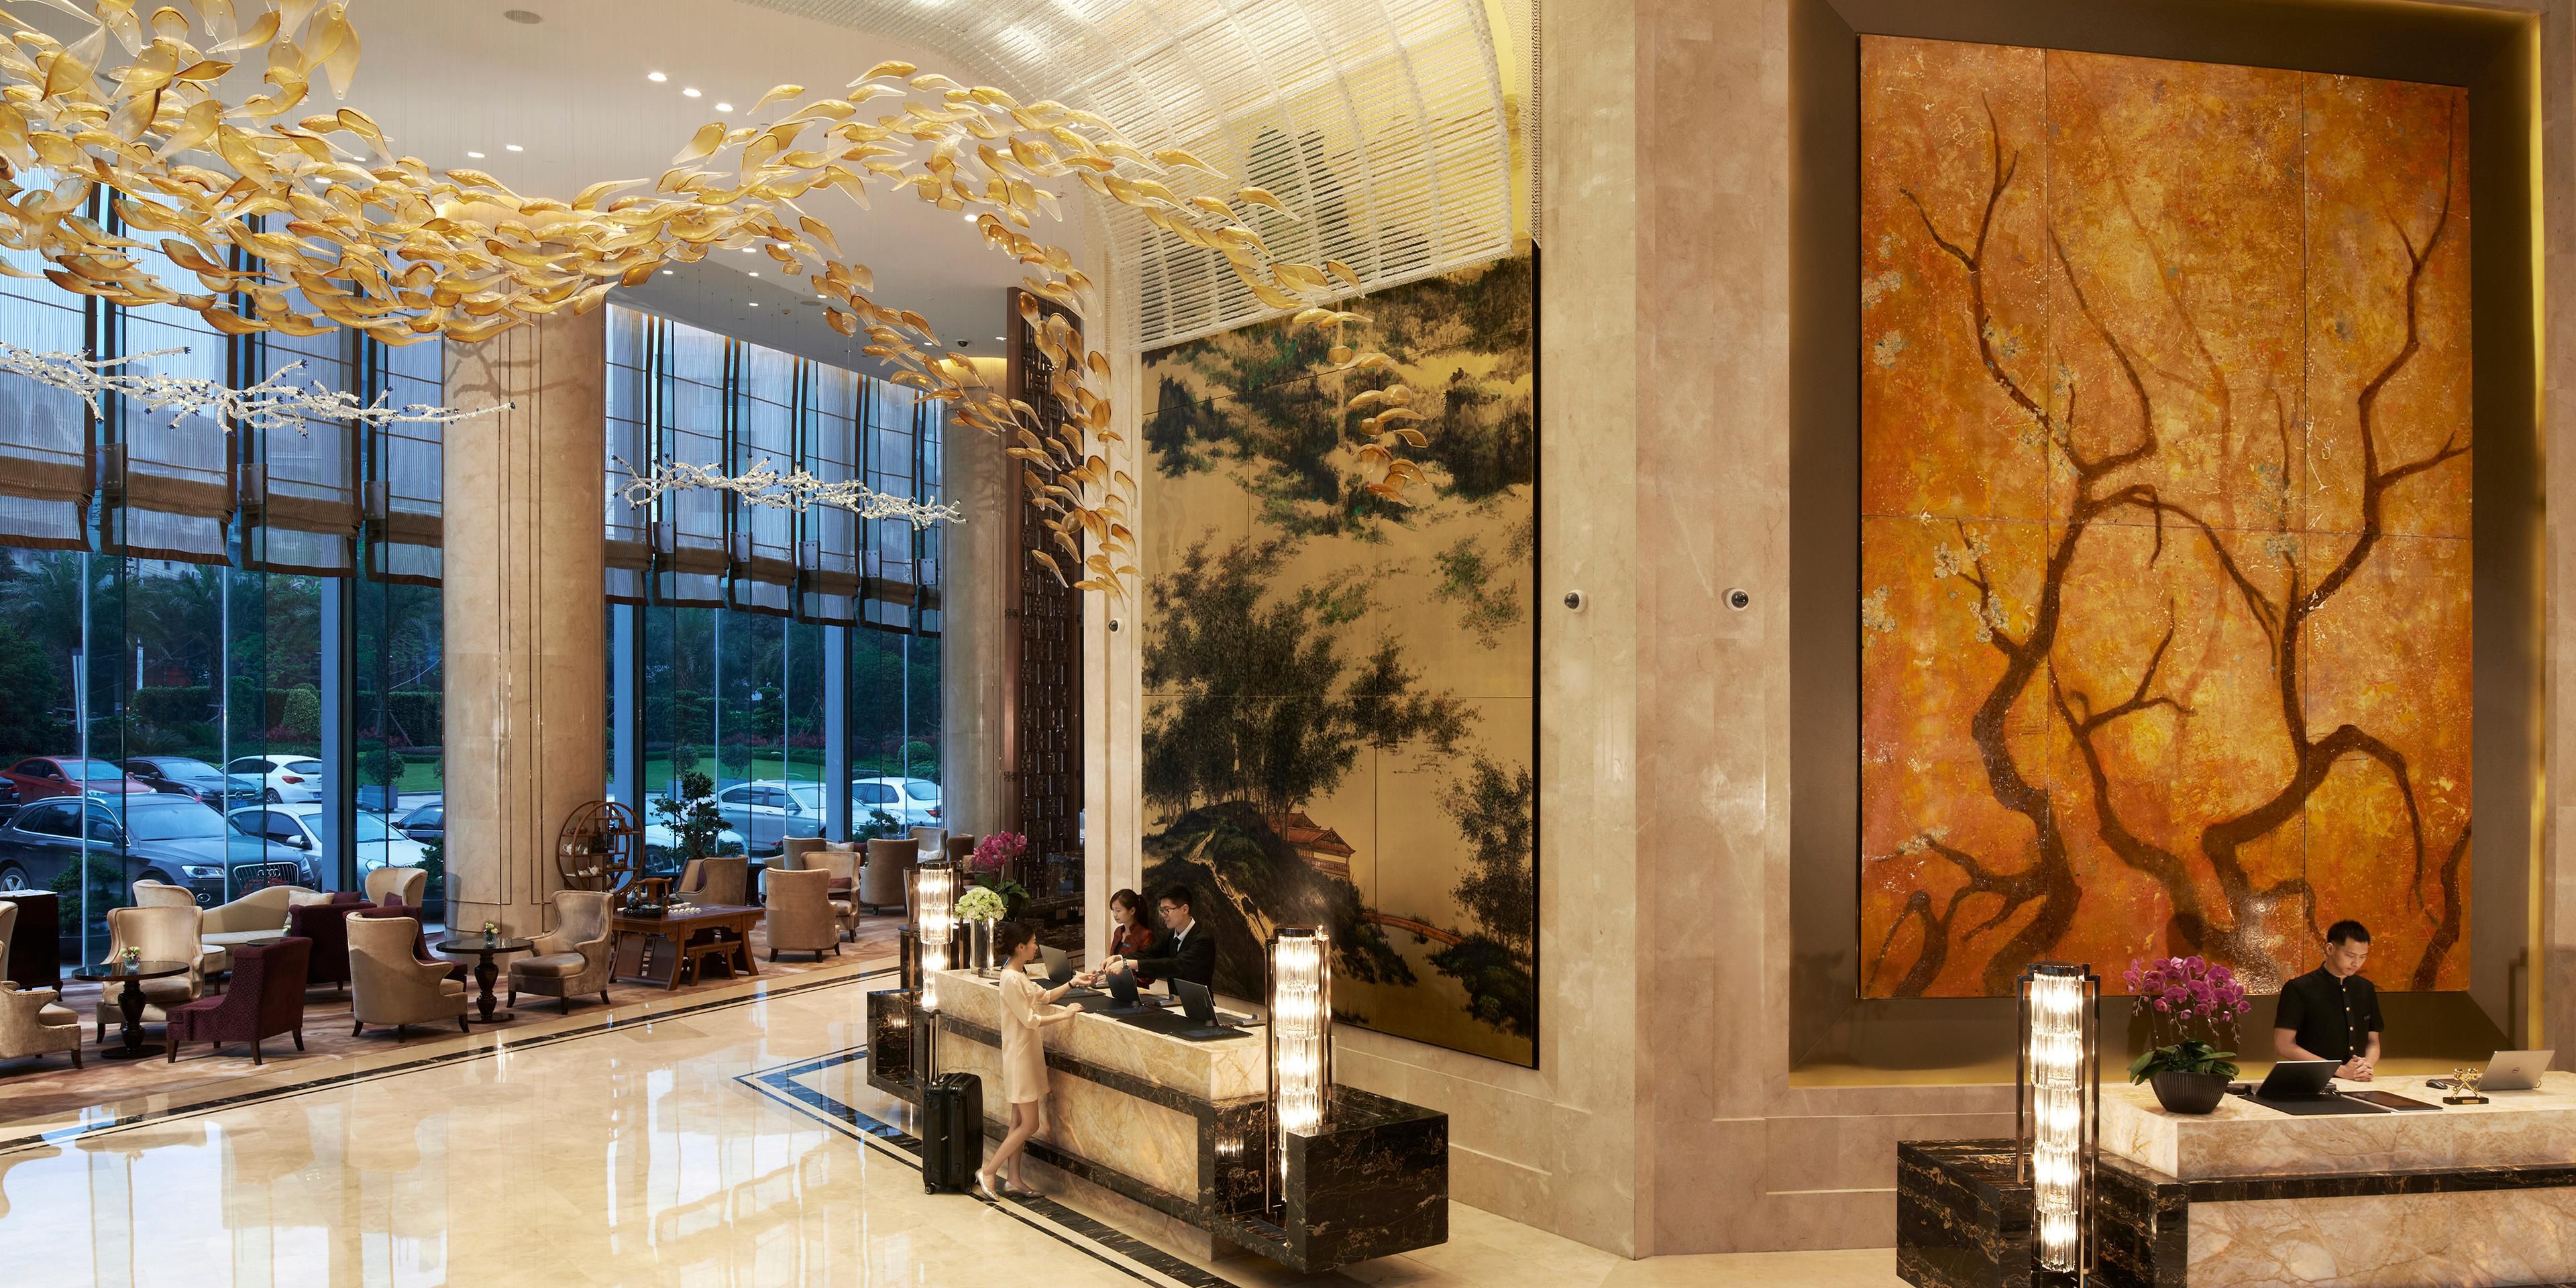 福州世茂洲际酒店几层图片